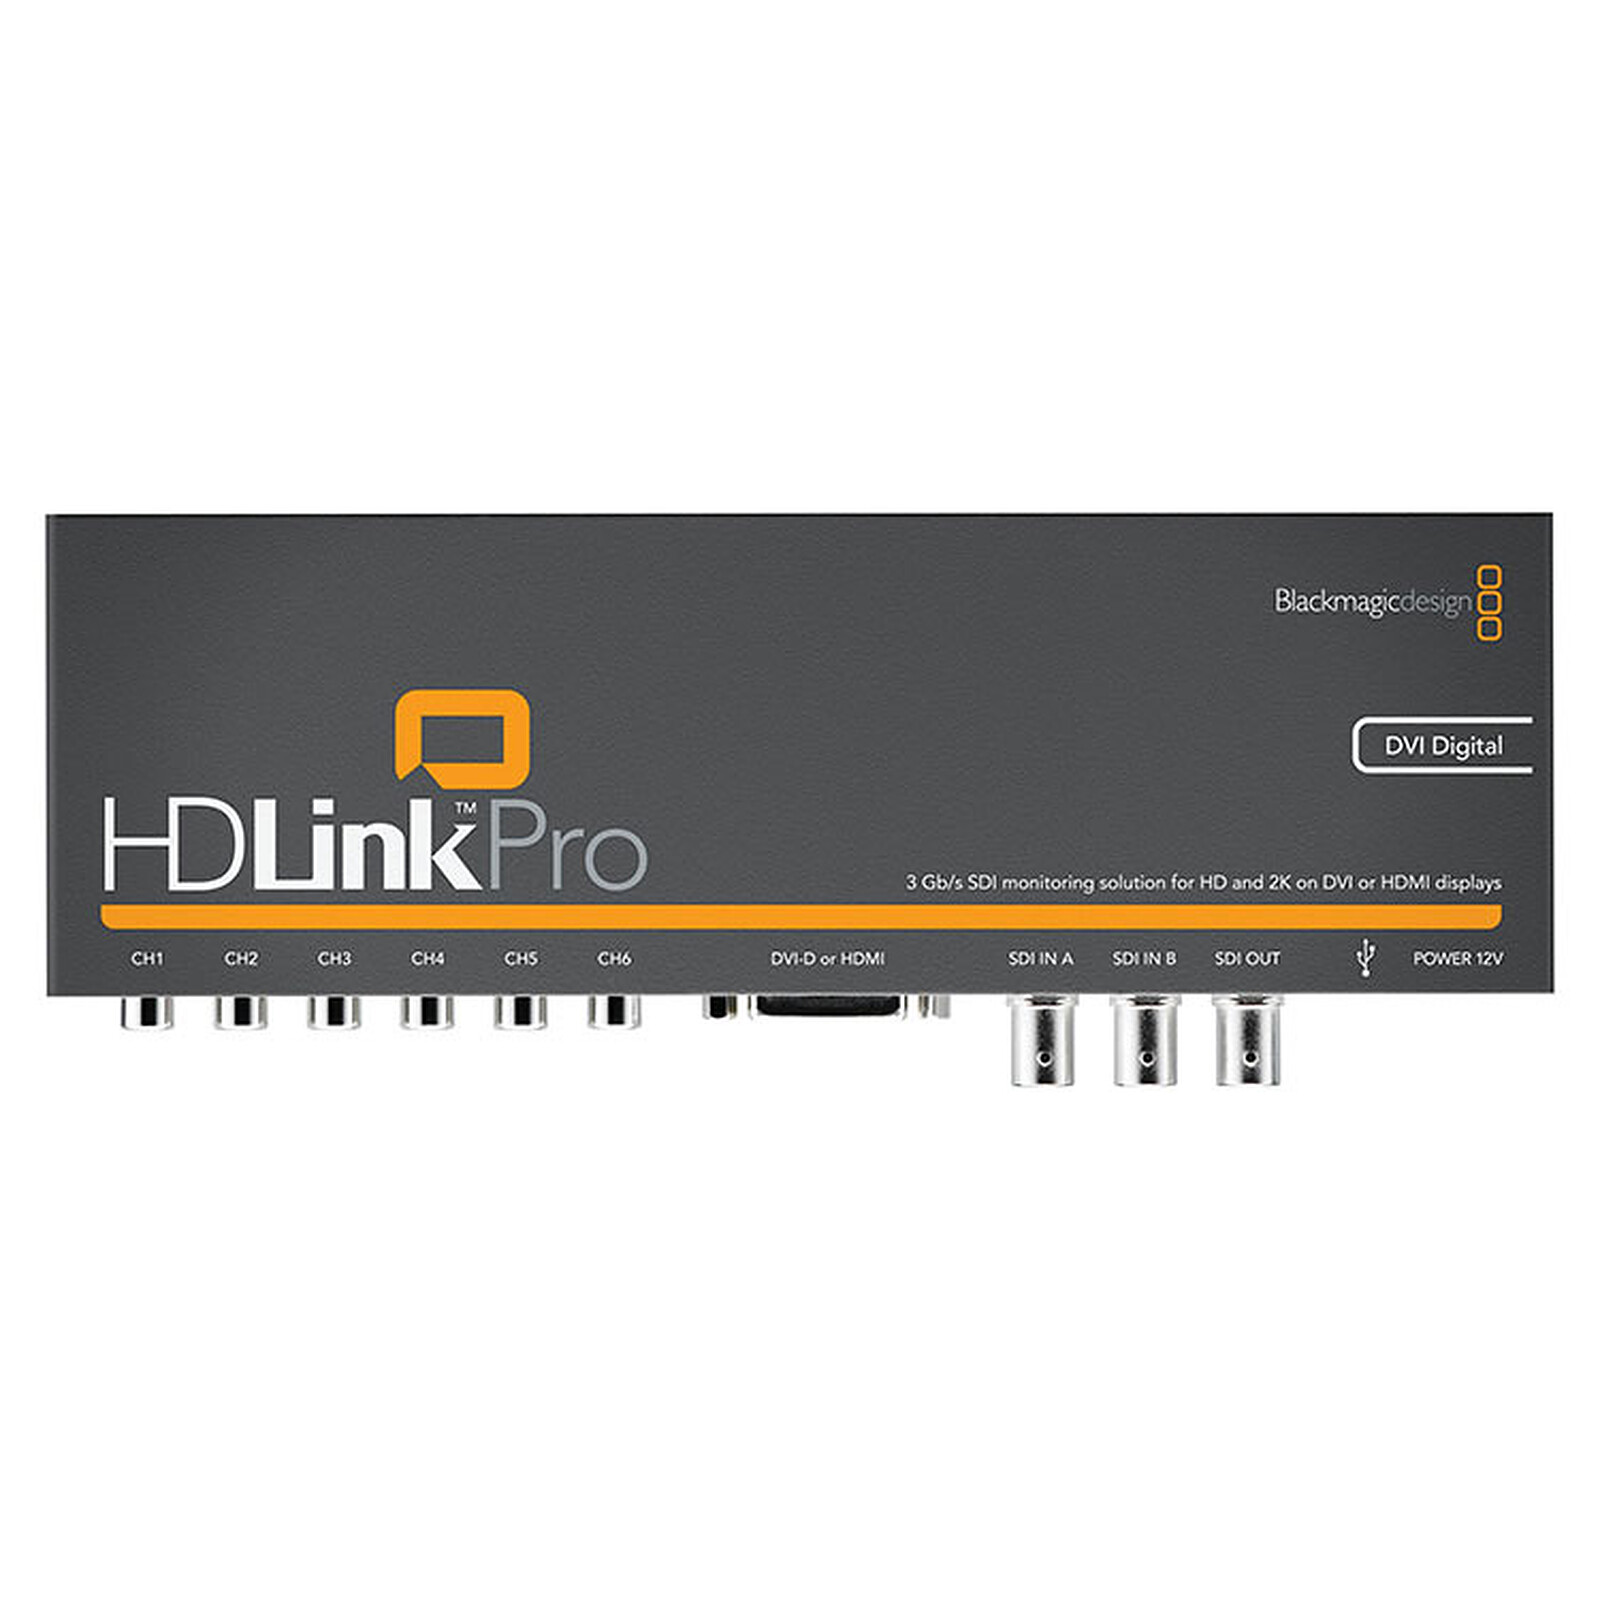 Blackmagic Design HDLink Pro DVI - Carte d'acquisition Blackmagic